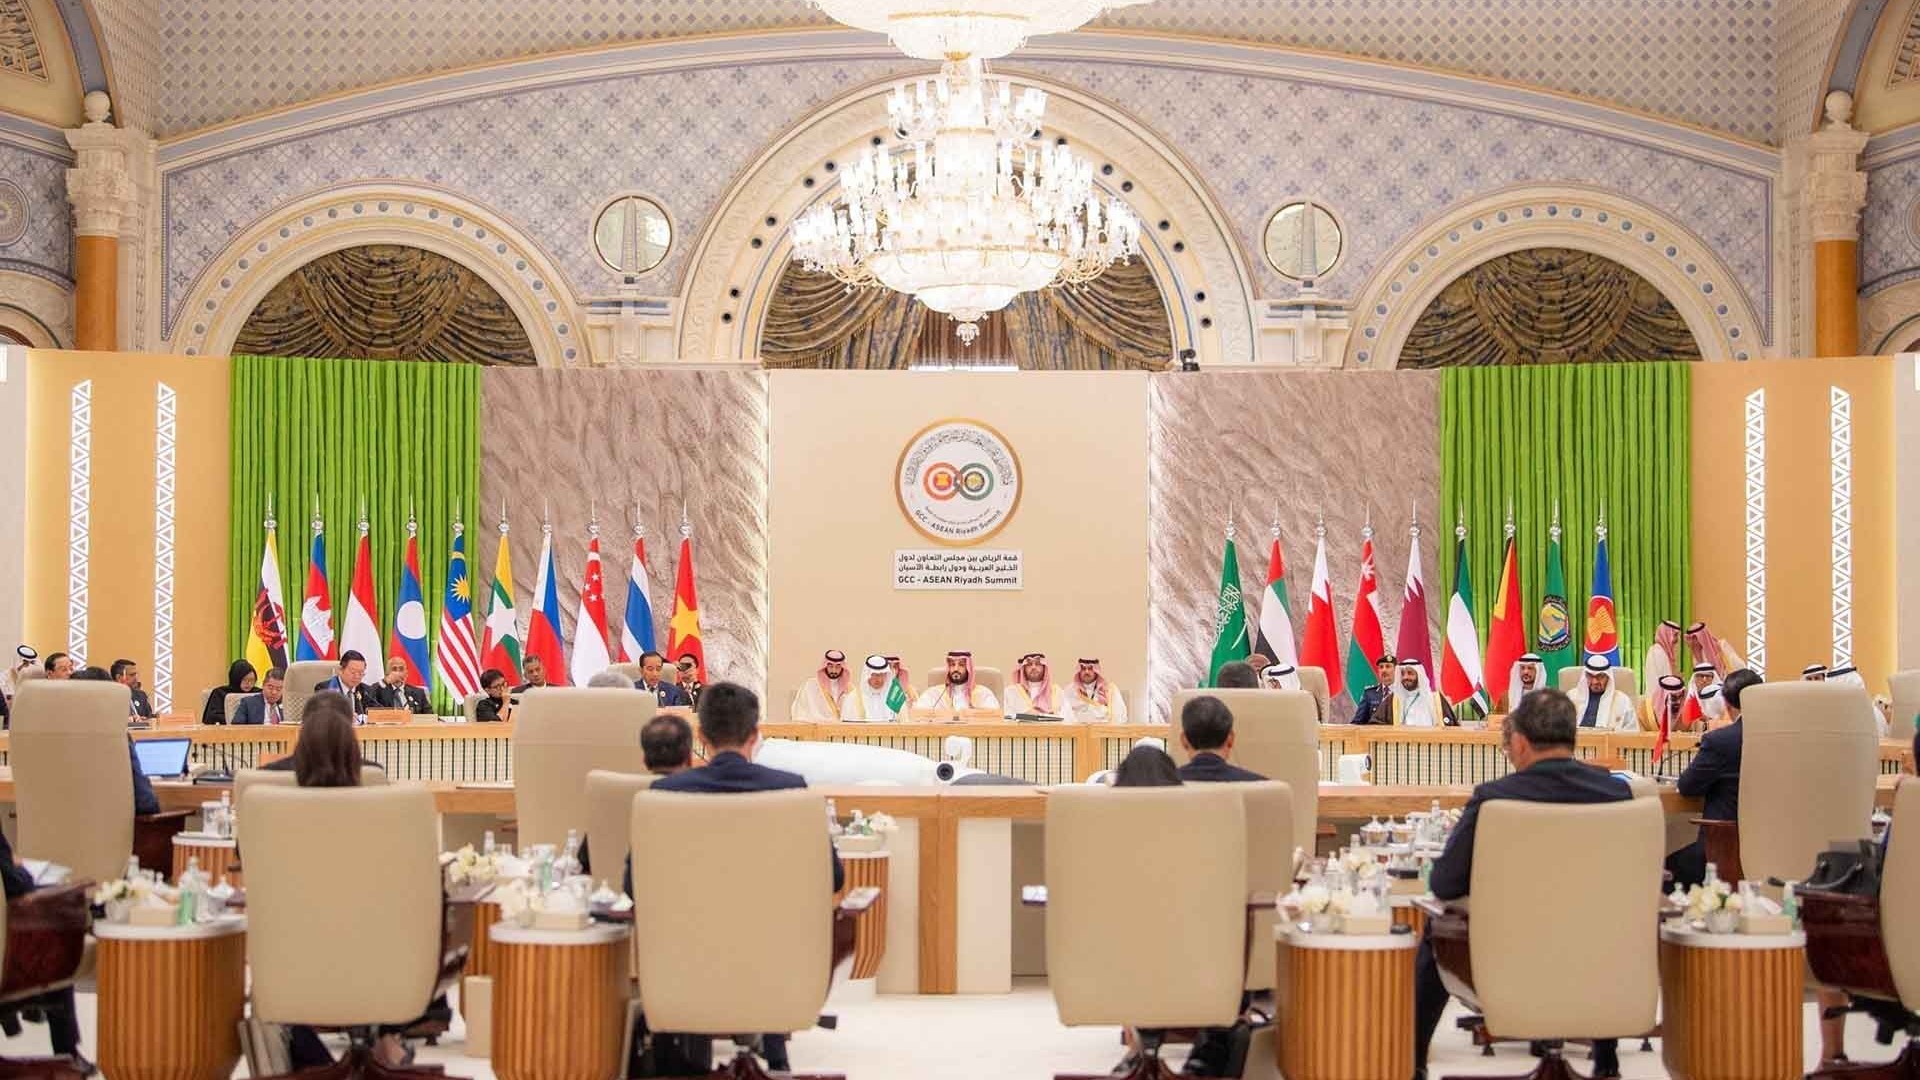 Toàn văn phát biểu của Thủ tướng Phạm Minh Chính tại Hội nghị cấp cao ASEAN-GCC